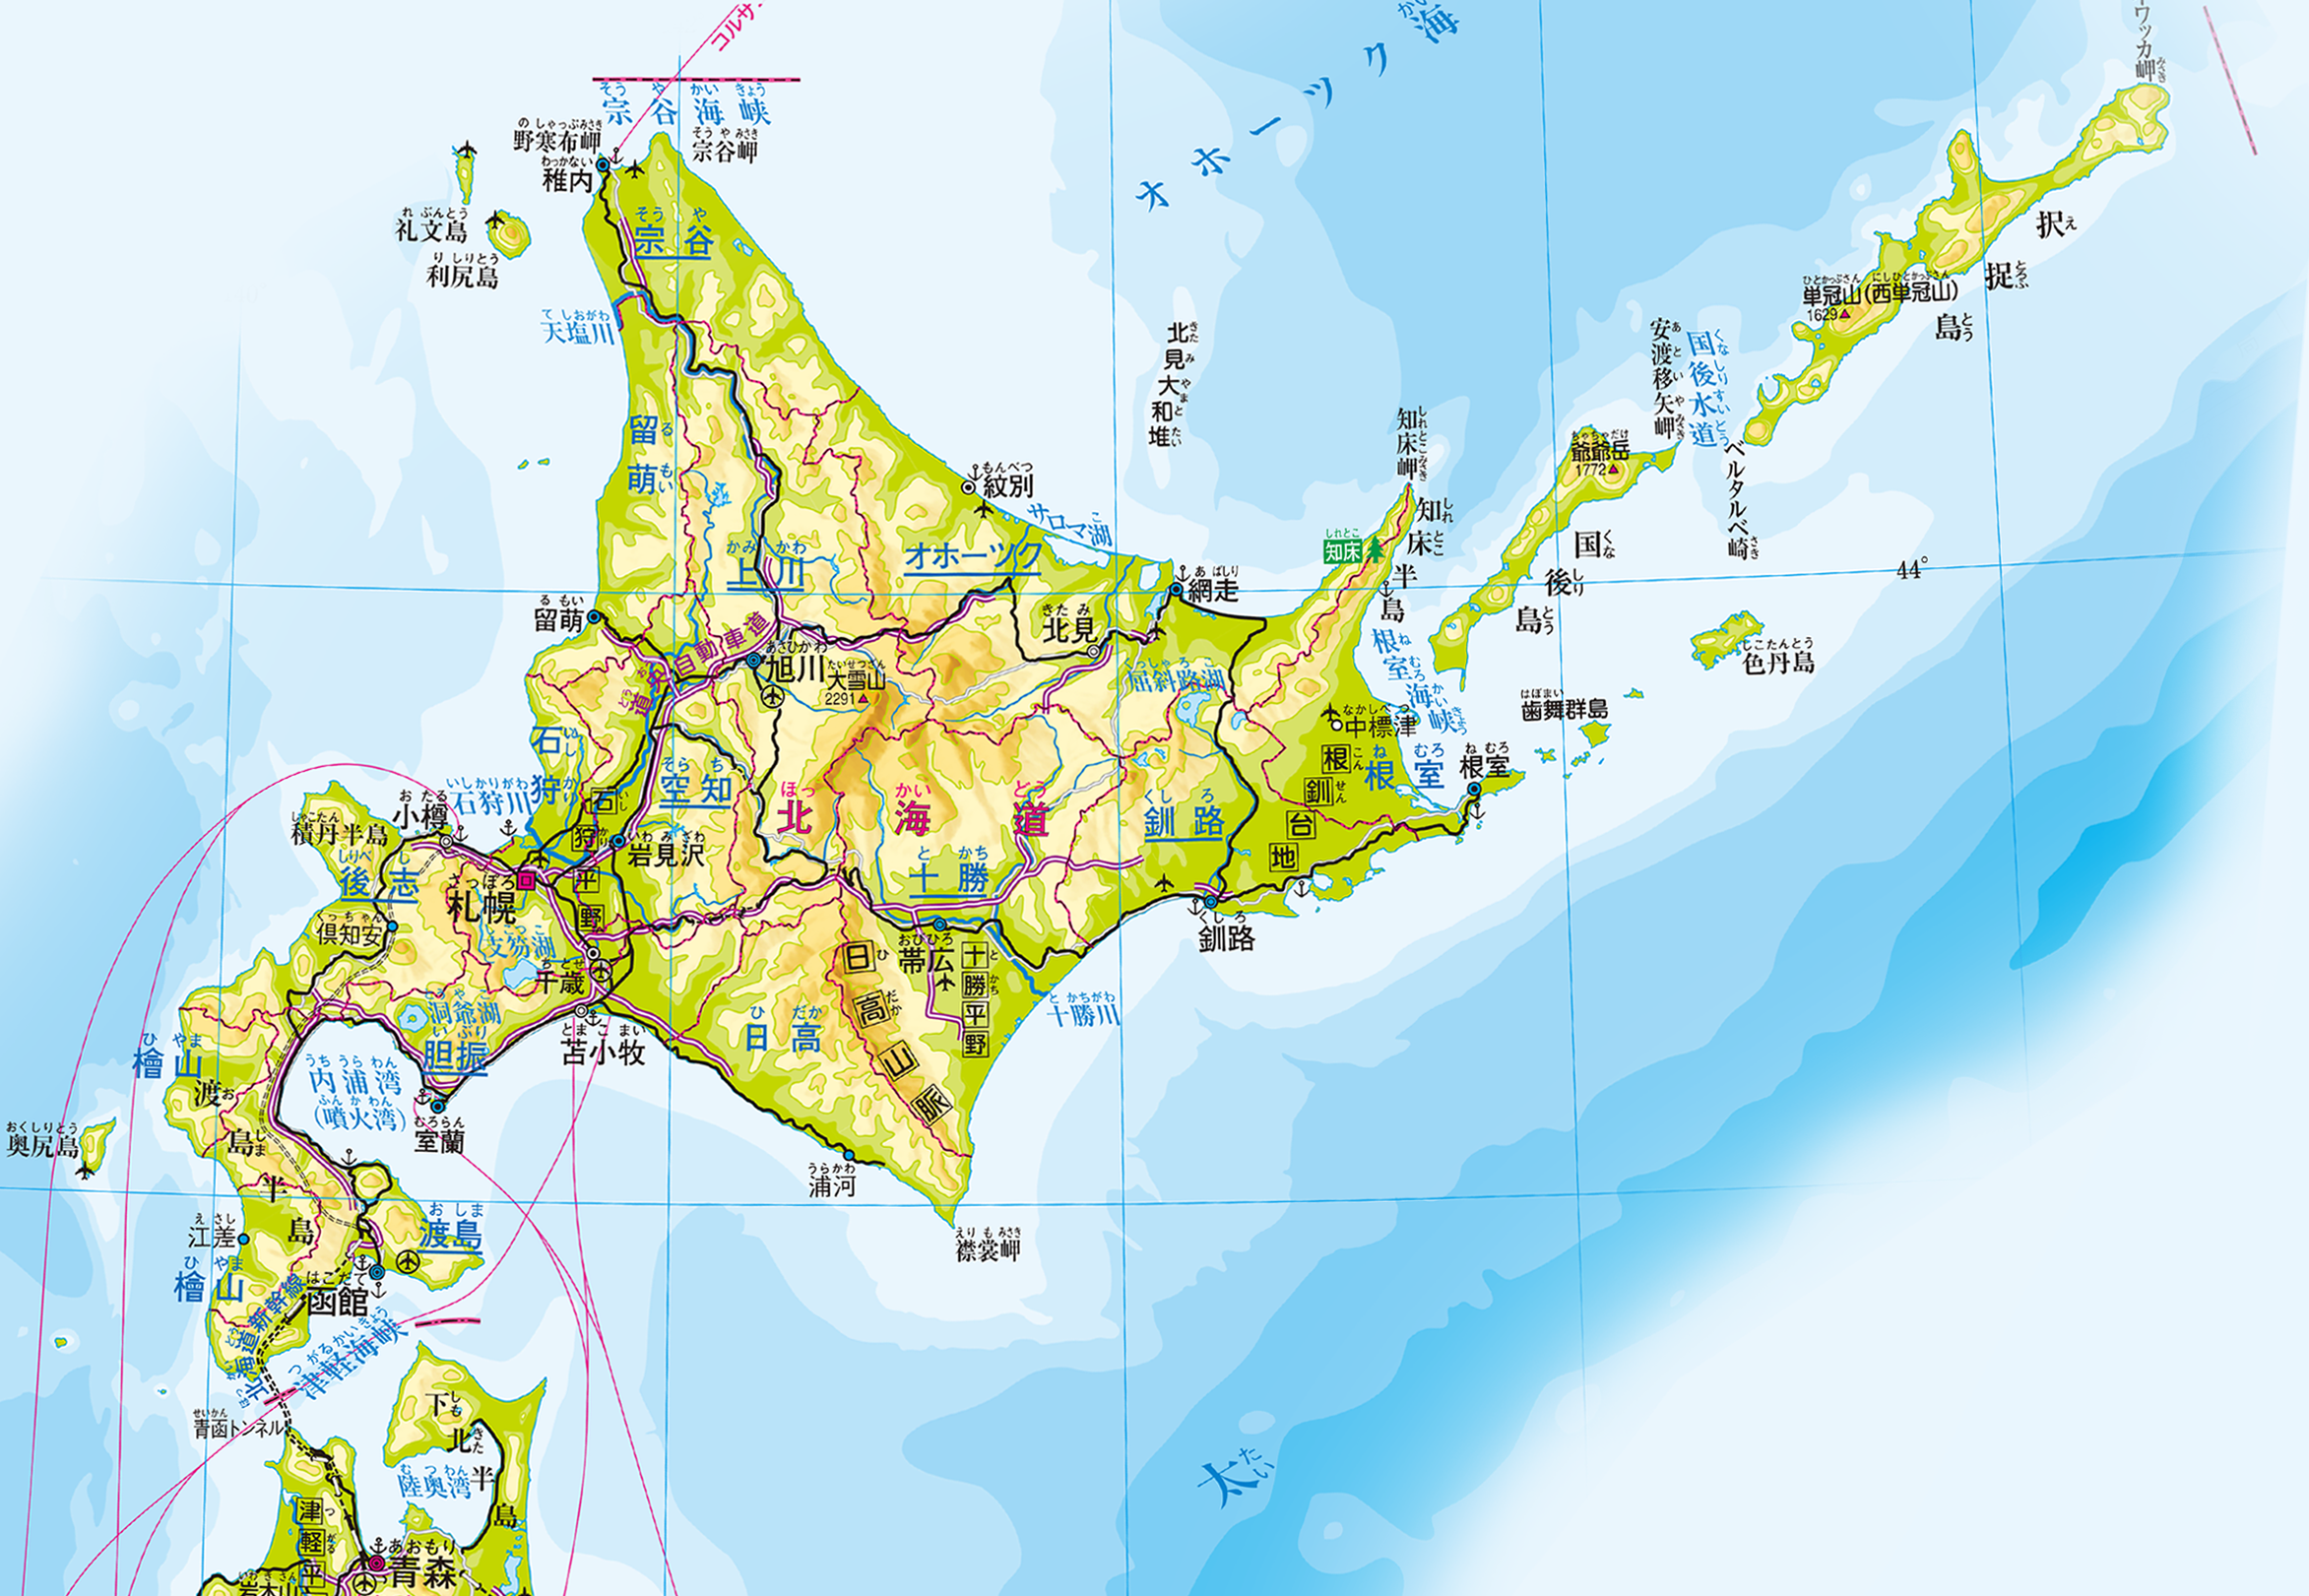 北海道地方 州 地方別メニュー 中学校社会科地図 帝国書院